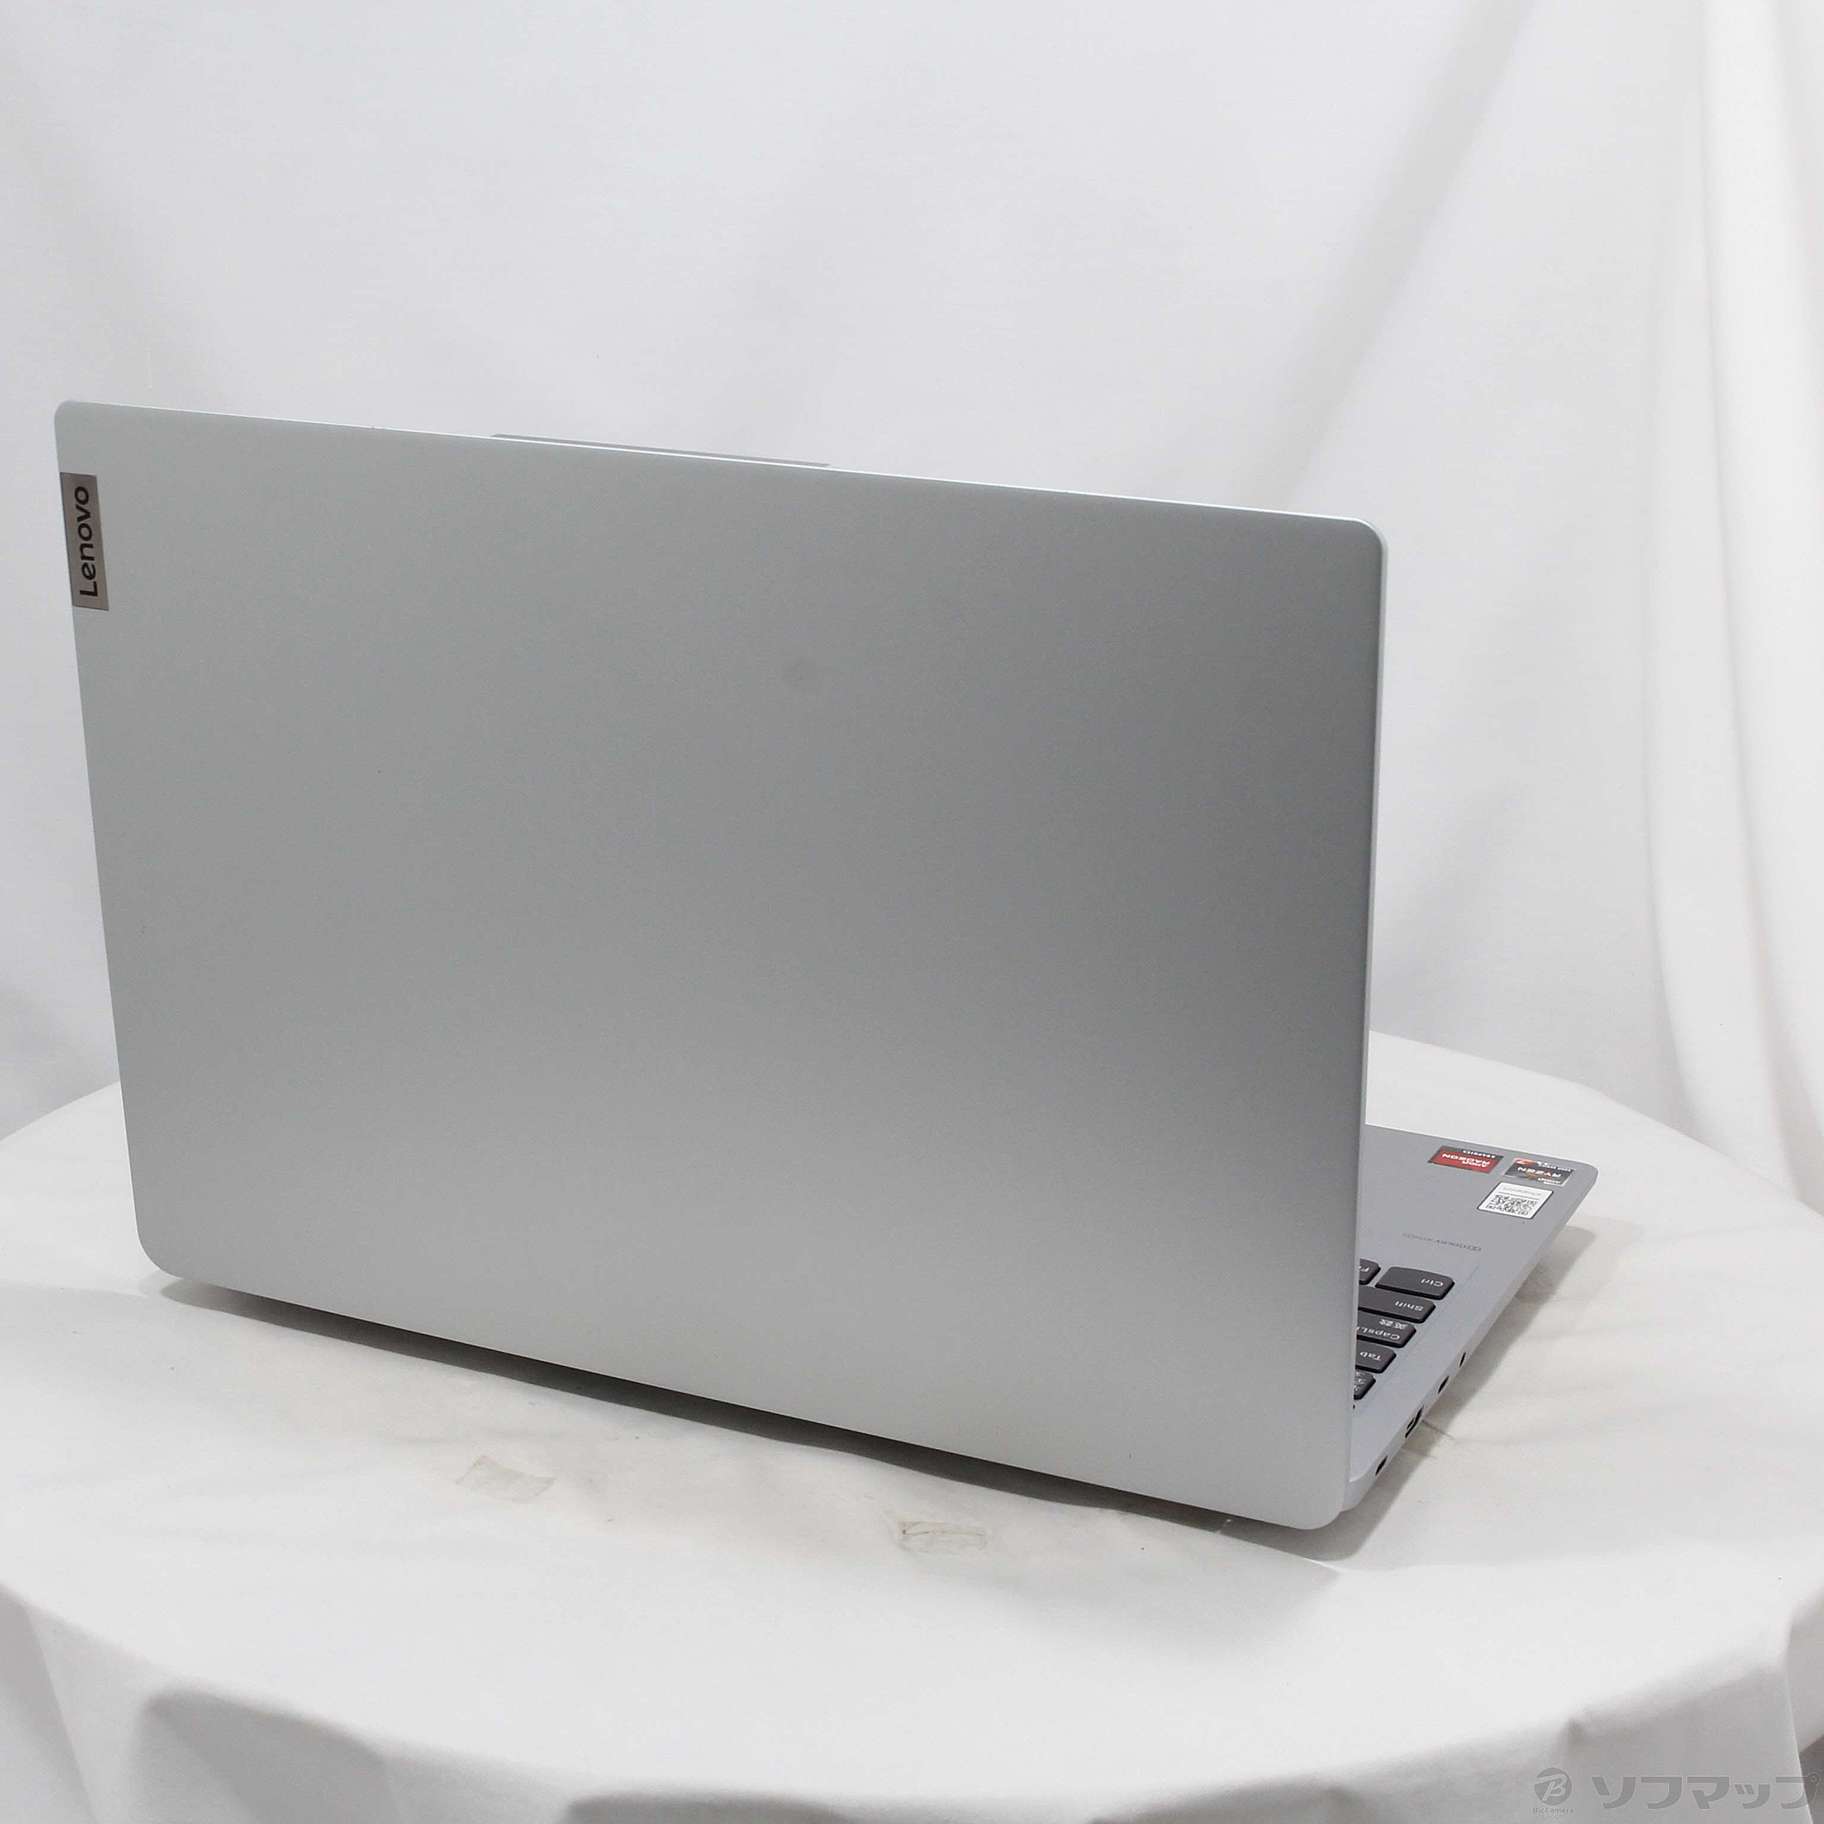 Lenovo IdeaPad Slim 560 Pro - クラウドグレー